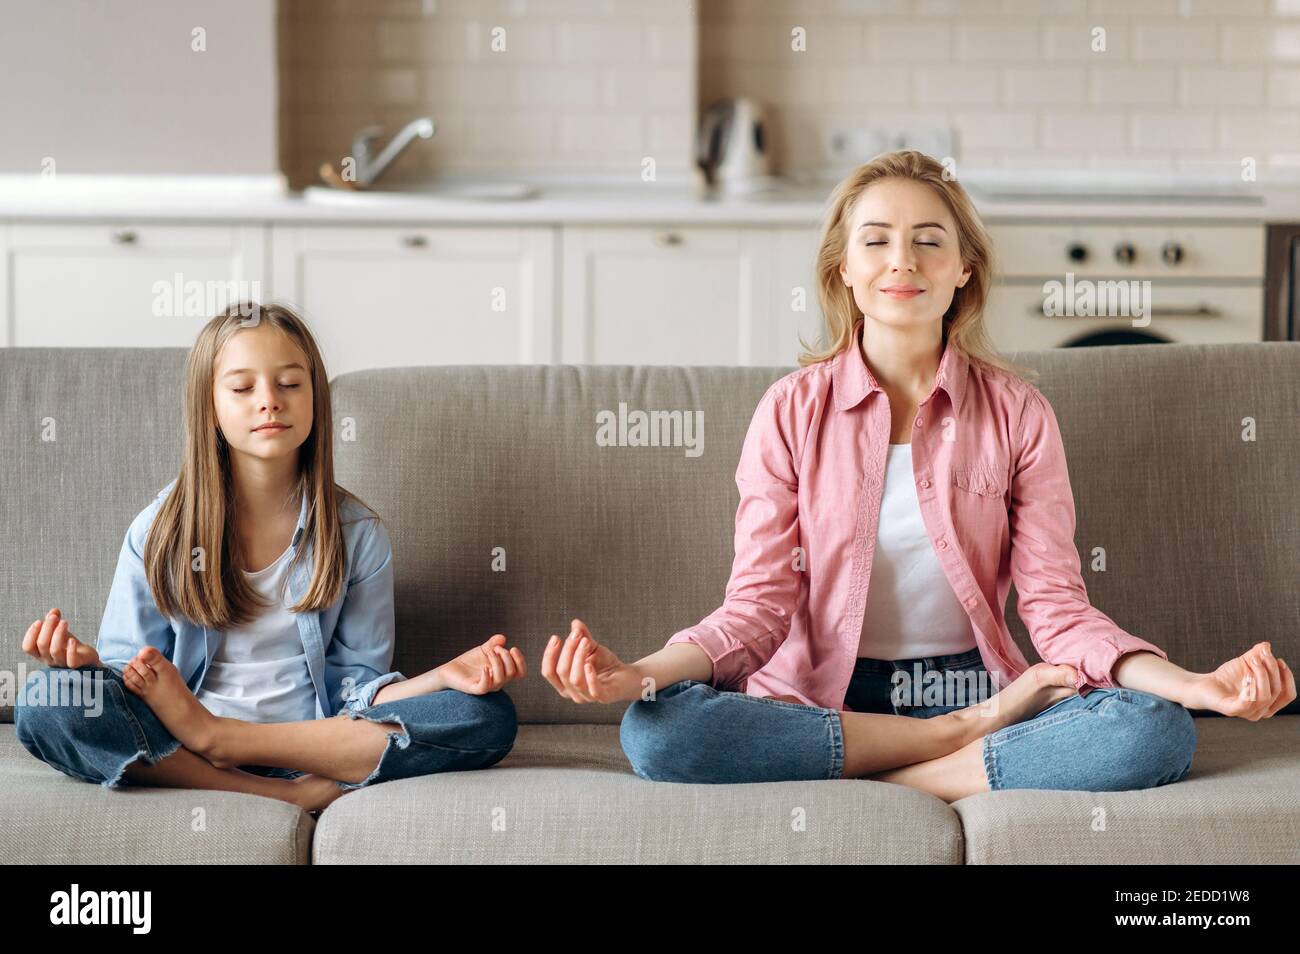 Maman et fille méditer. Belle jeune maman caucasienne avec petite fille mignonne faisant du yoga et de la méditation à la maison sur le canapé, assis en position de lotus, calme, détente Banque D'Images